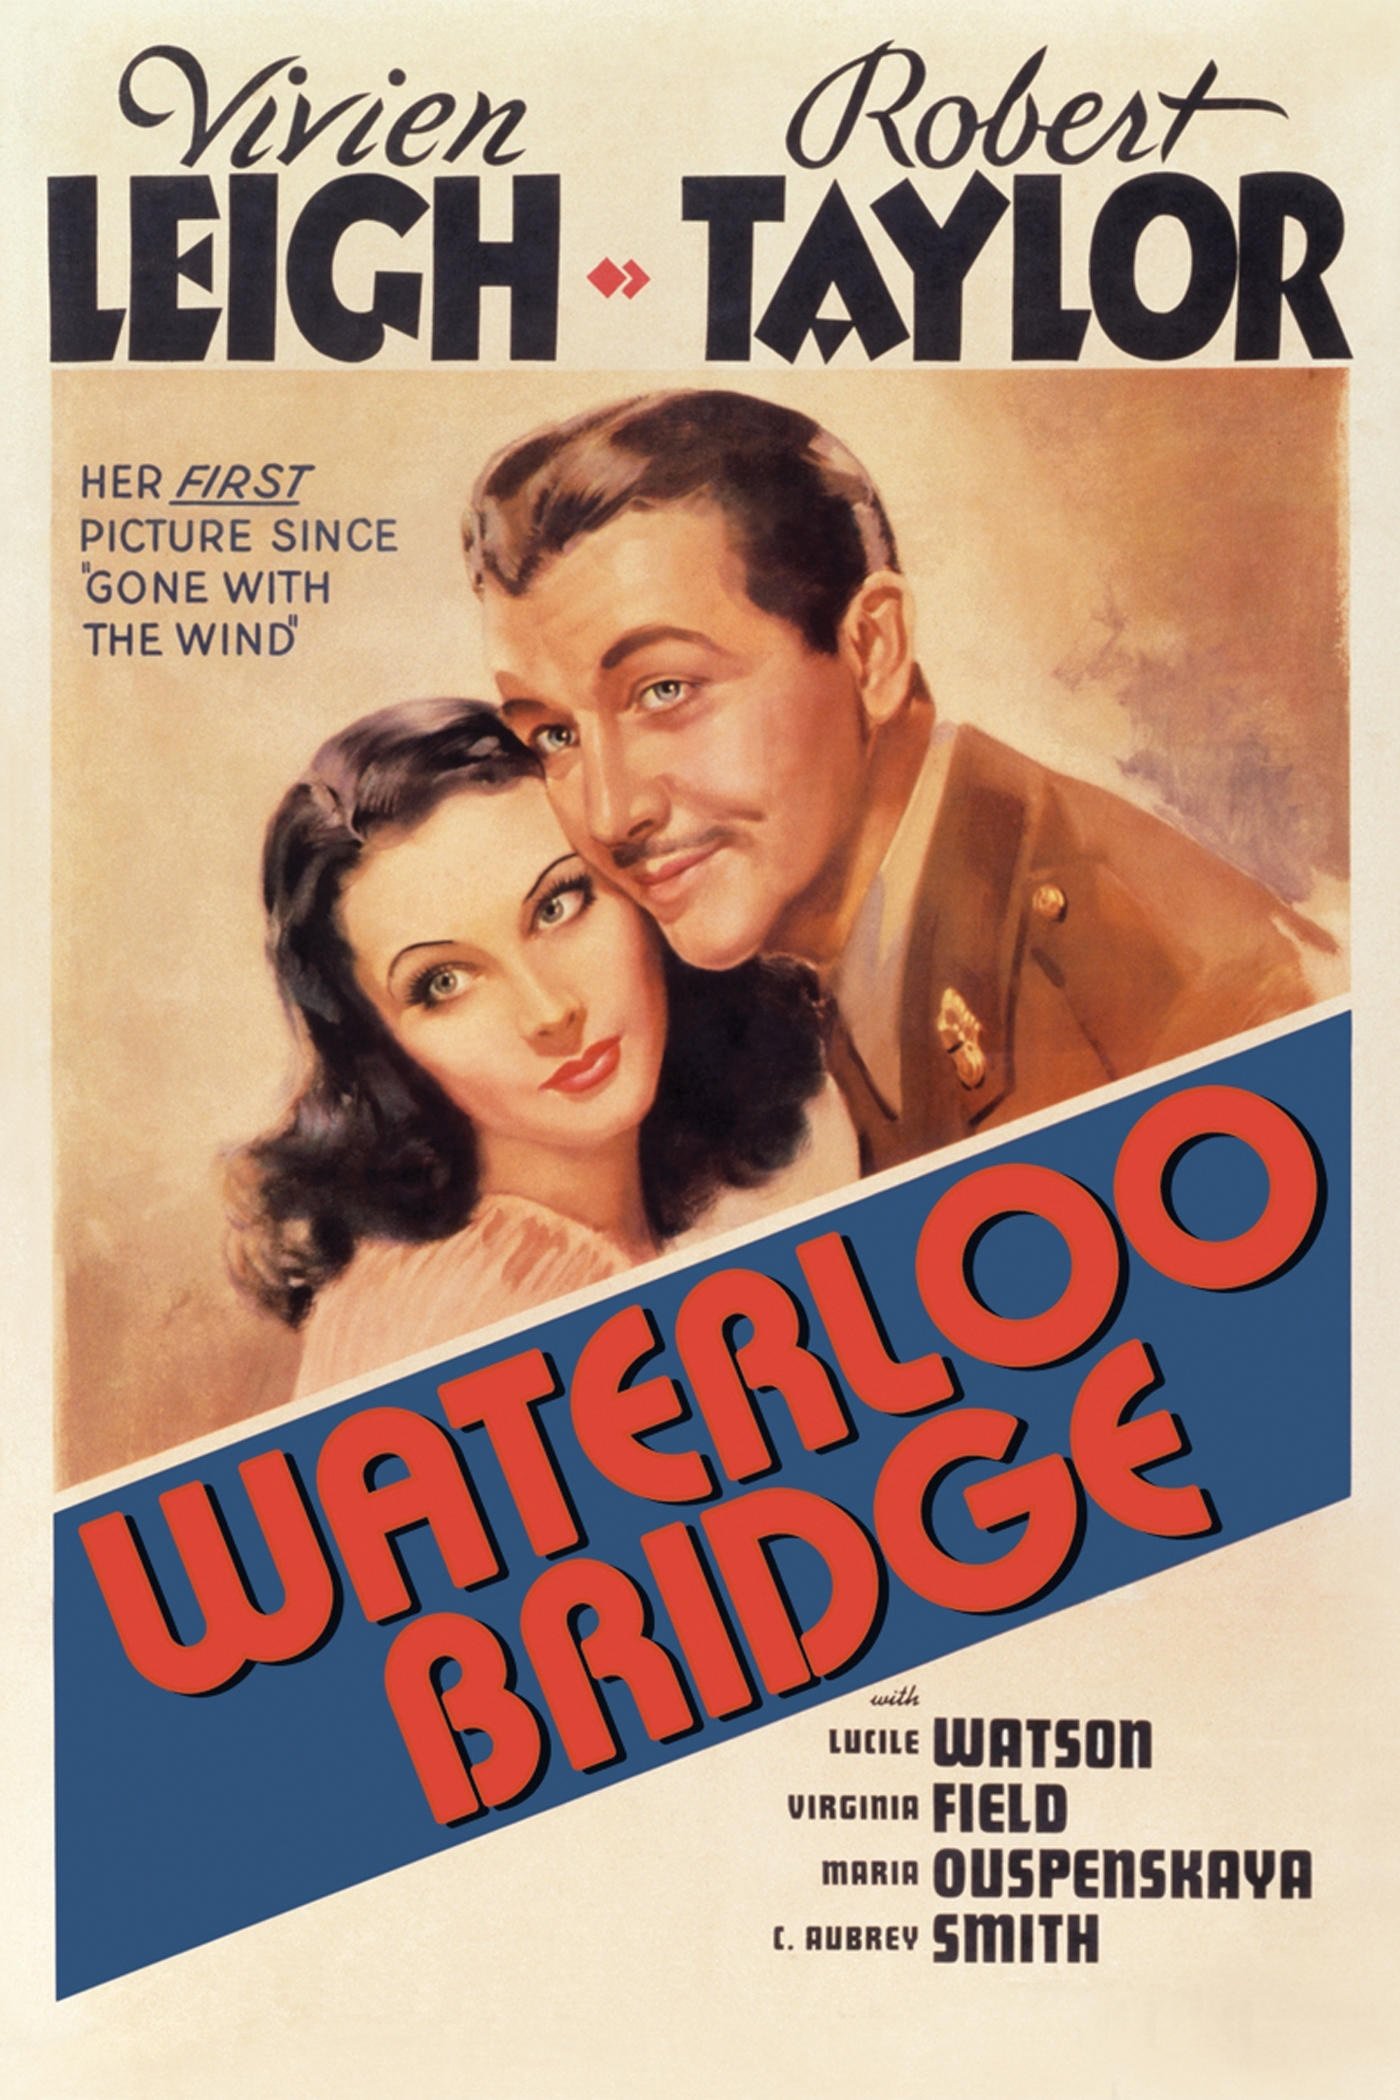 1940 Waterloo Bridge movie poster